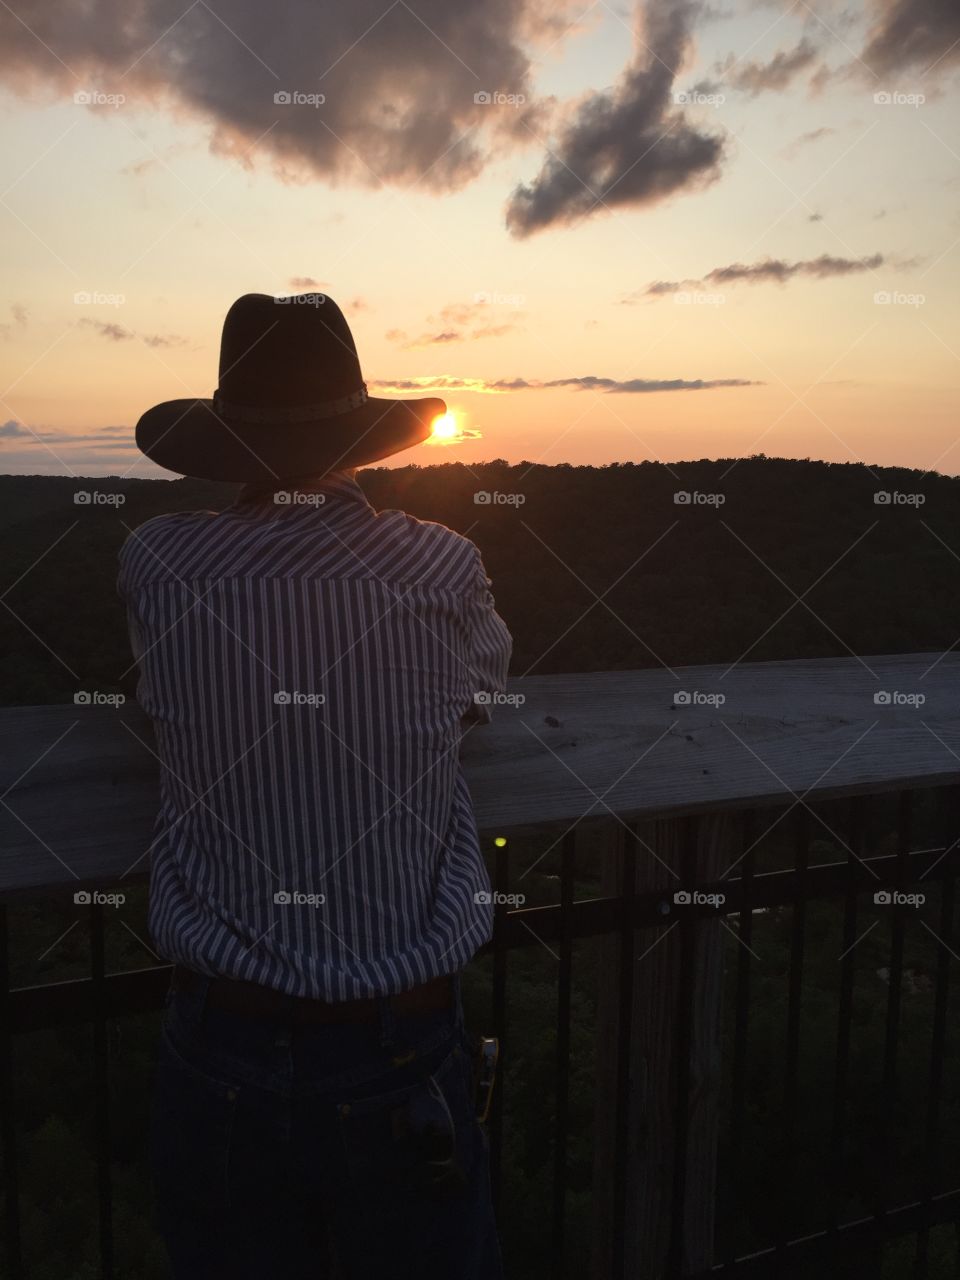 Sunset cowboy